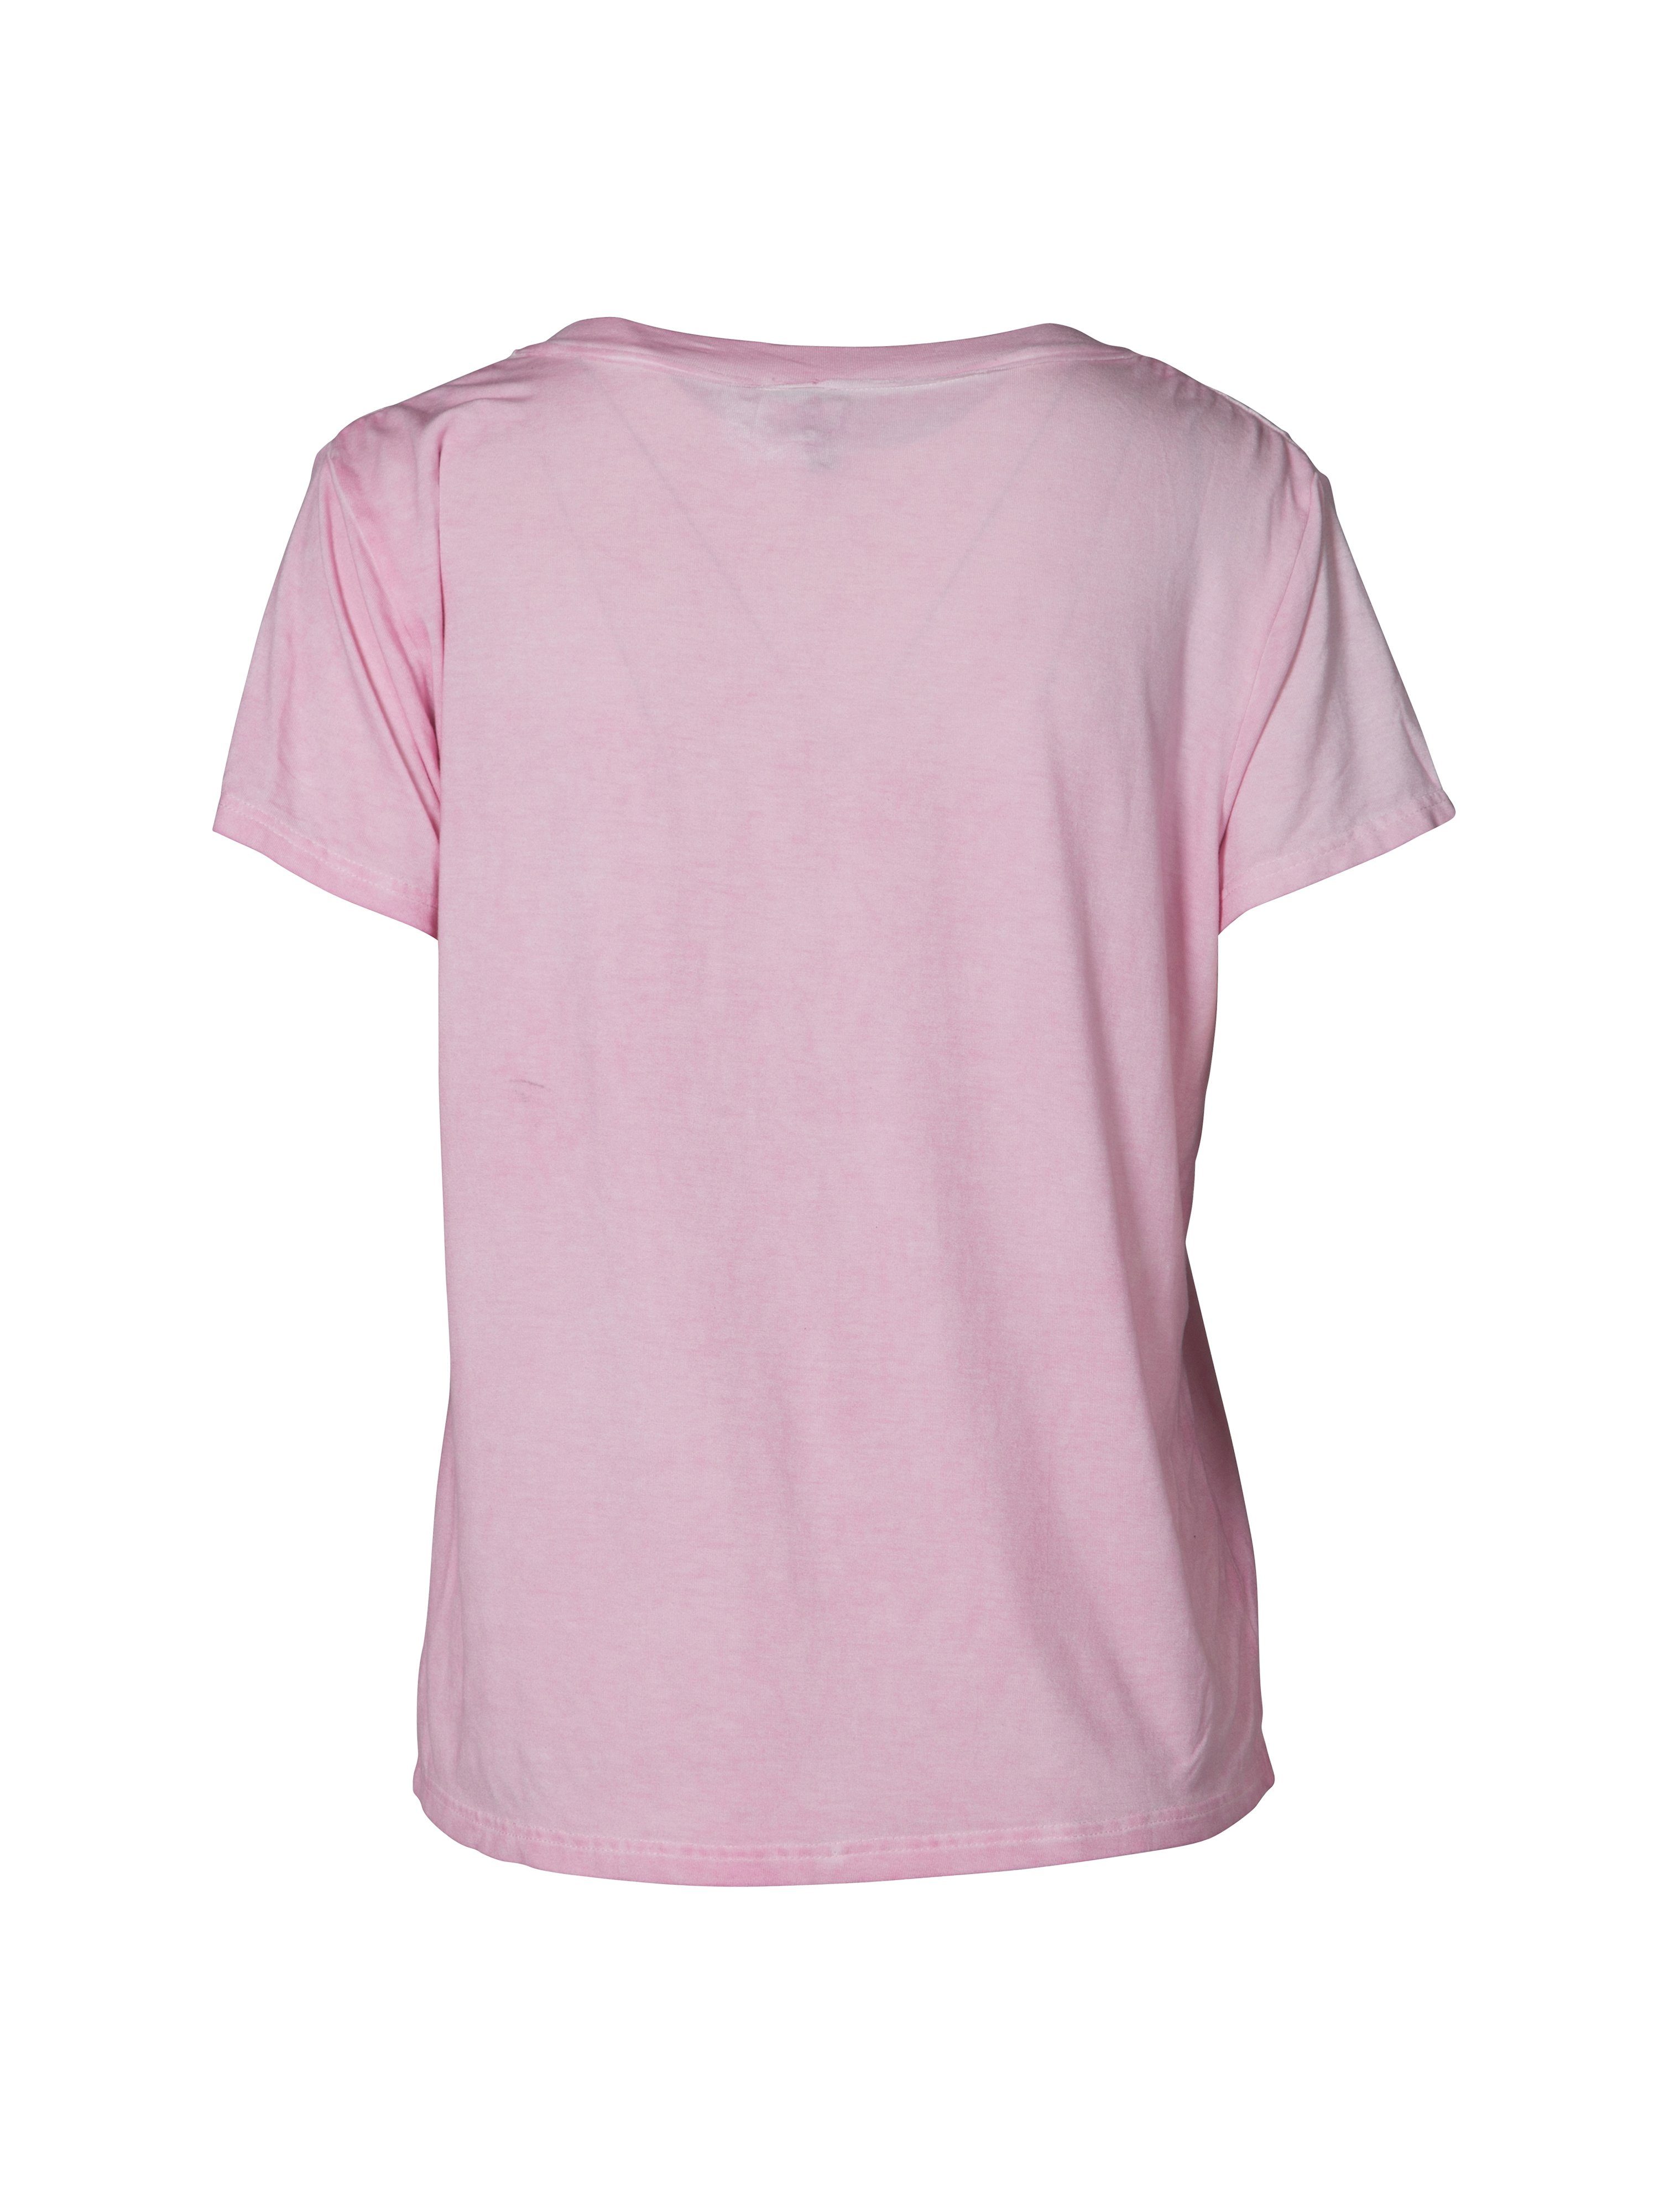 T- Shirt NÜ 7565-50 DENMARK mist Denmark NÜ pink T-Shirt